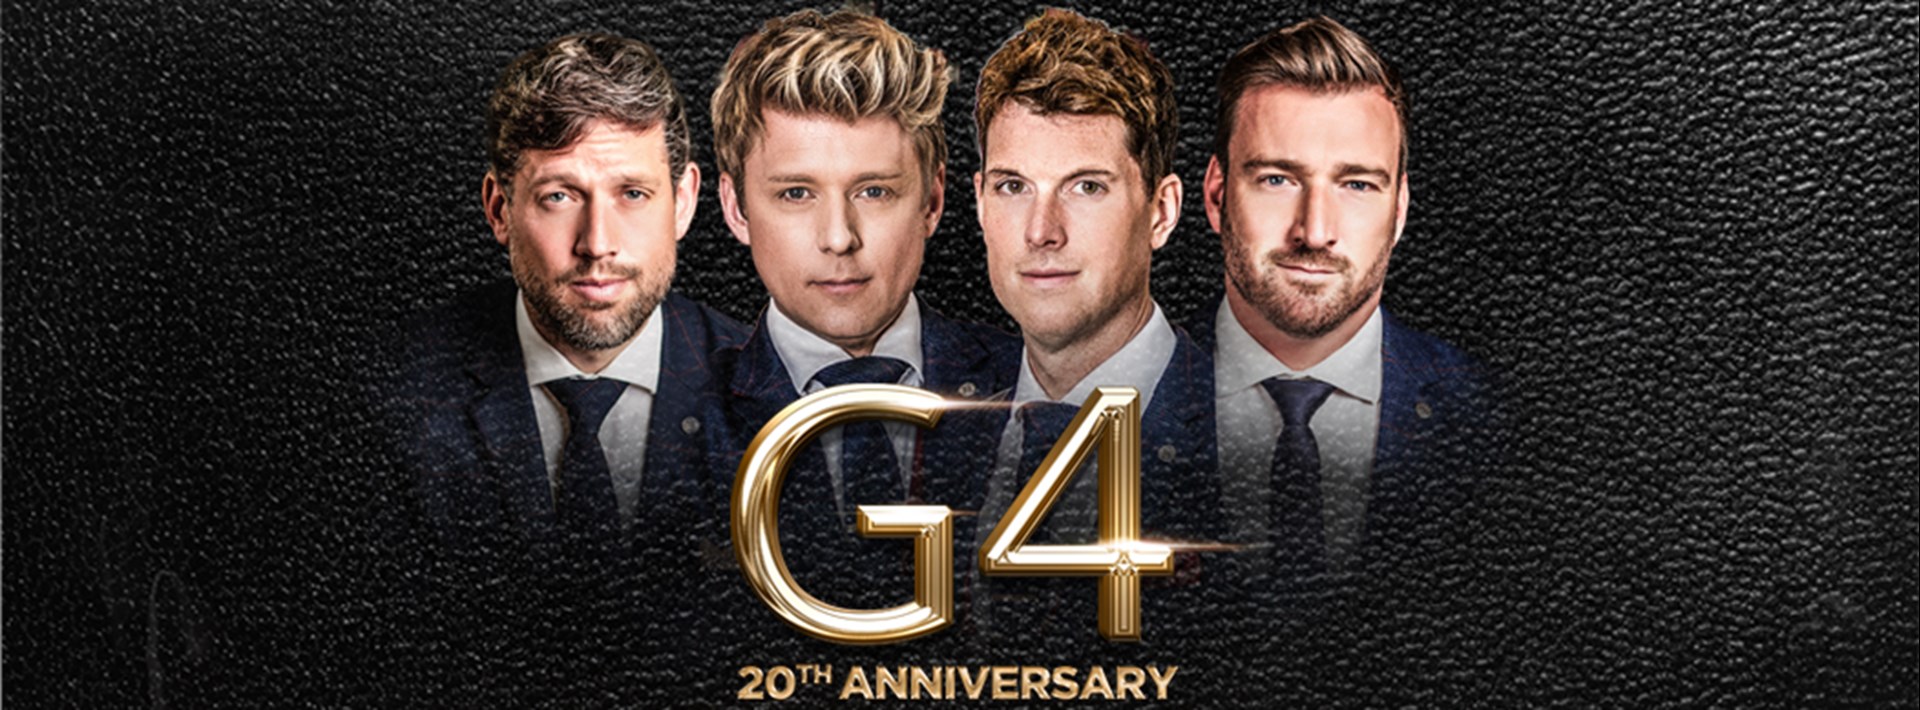 G4 20th Anniversary